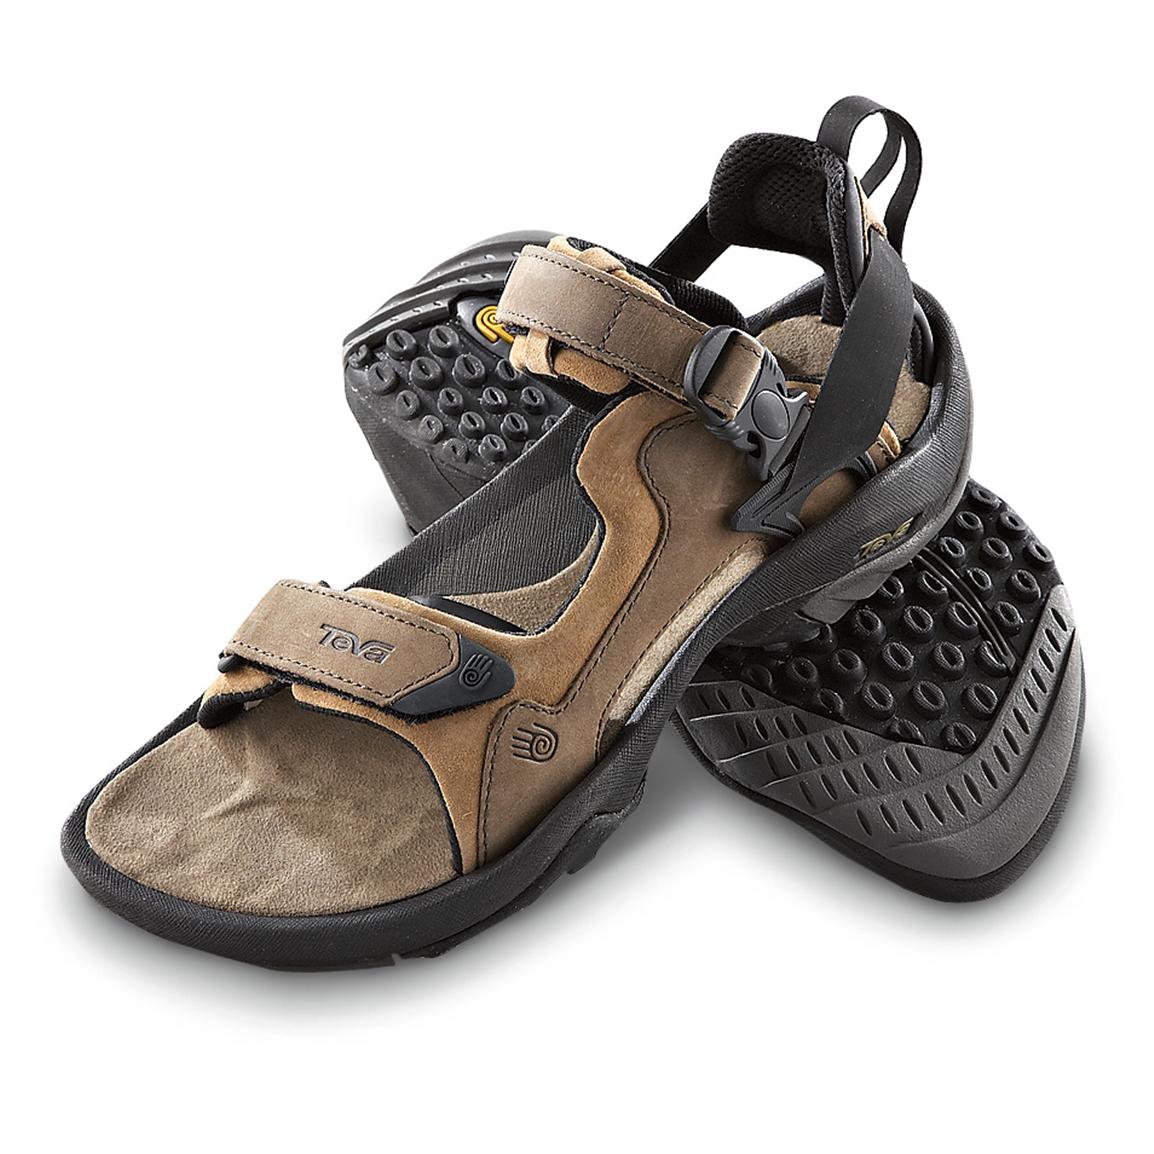 Men's Teva® Terra Luxe Adventure Sandals, Brown - 155604, Sandals ...